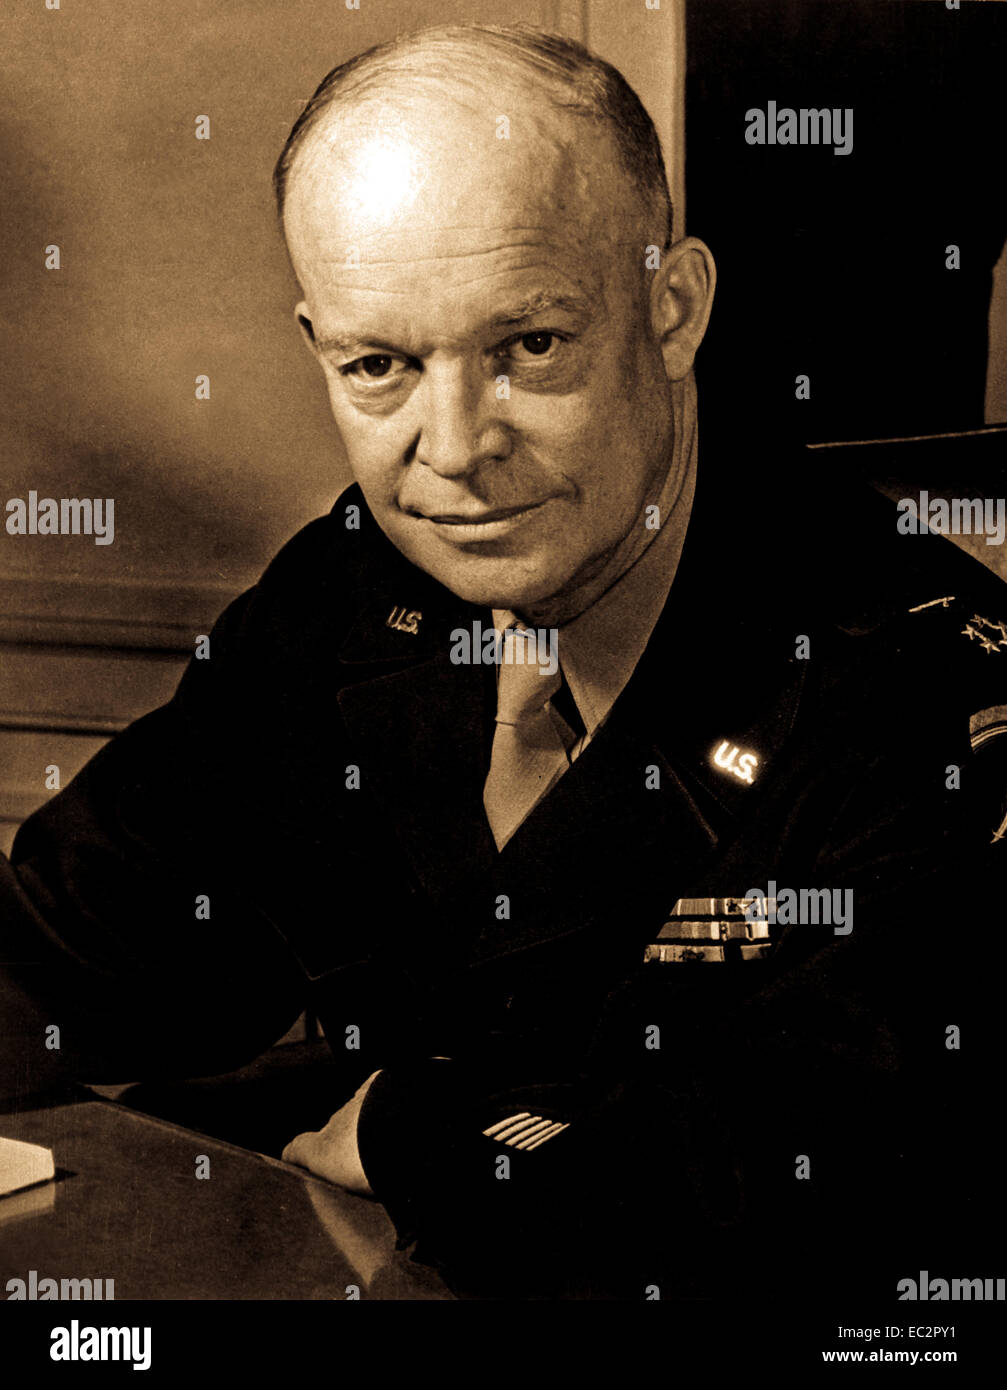 General dwight d. Eisenhower, il Comandante supremo alleato, presso la sua sede in un teatro di operazioni europeo. Egli indossa le cinque stelle di cluster di recente creazione di rango generale dell'esercito. 1 febbraio 1945. Foto Stock